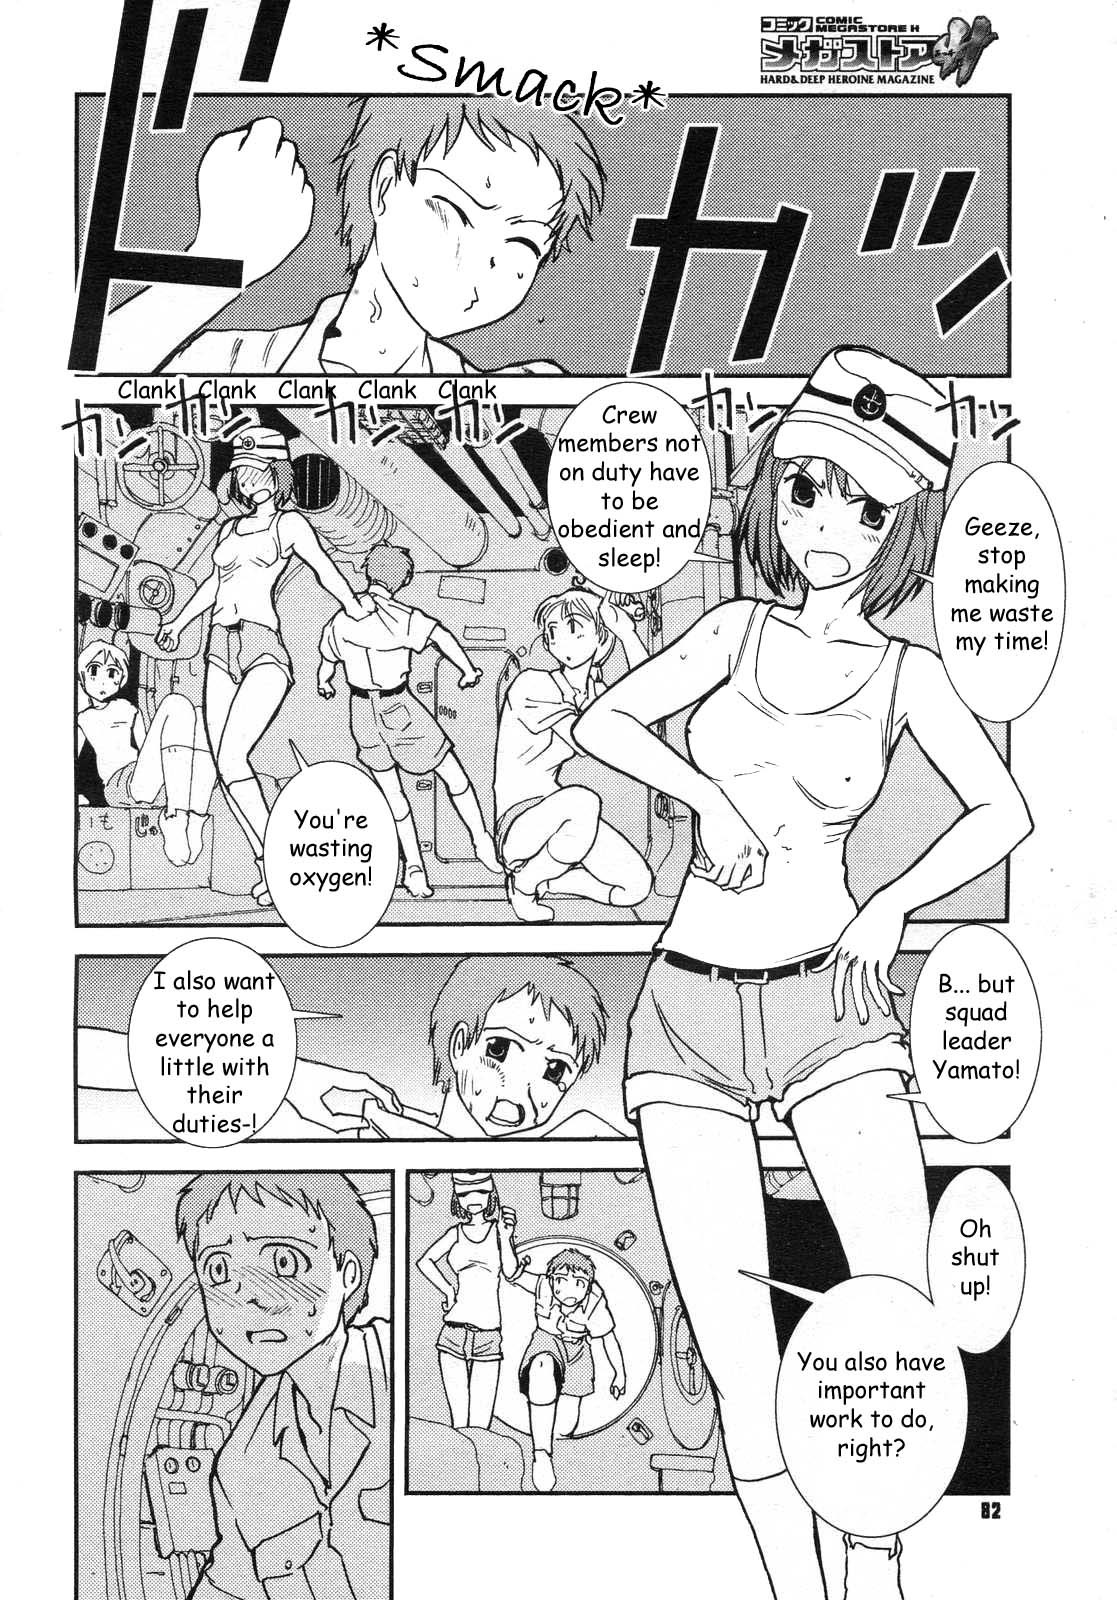 Mitsumei a.k.a. I-404 3 hentai manga